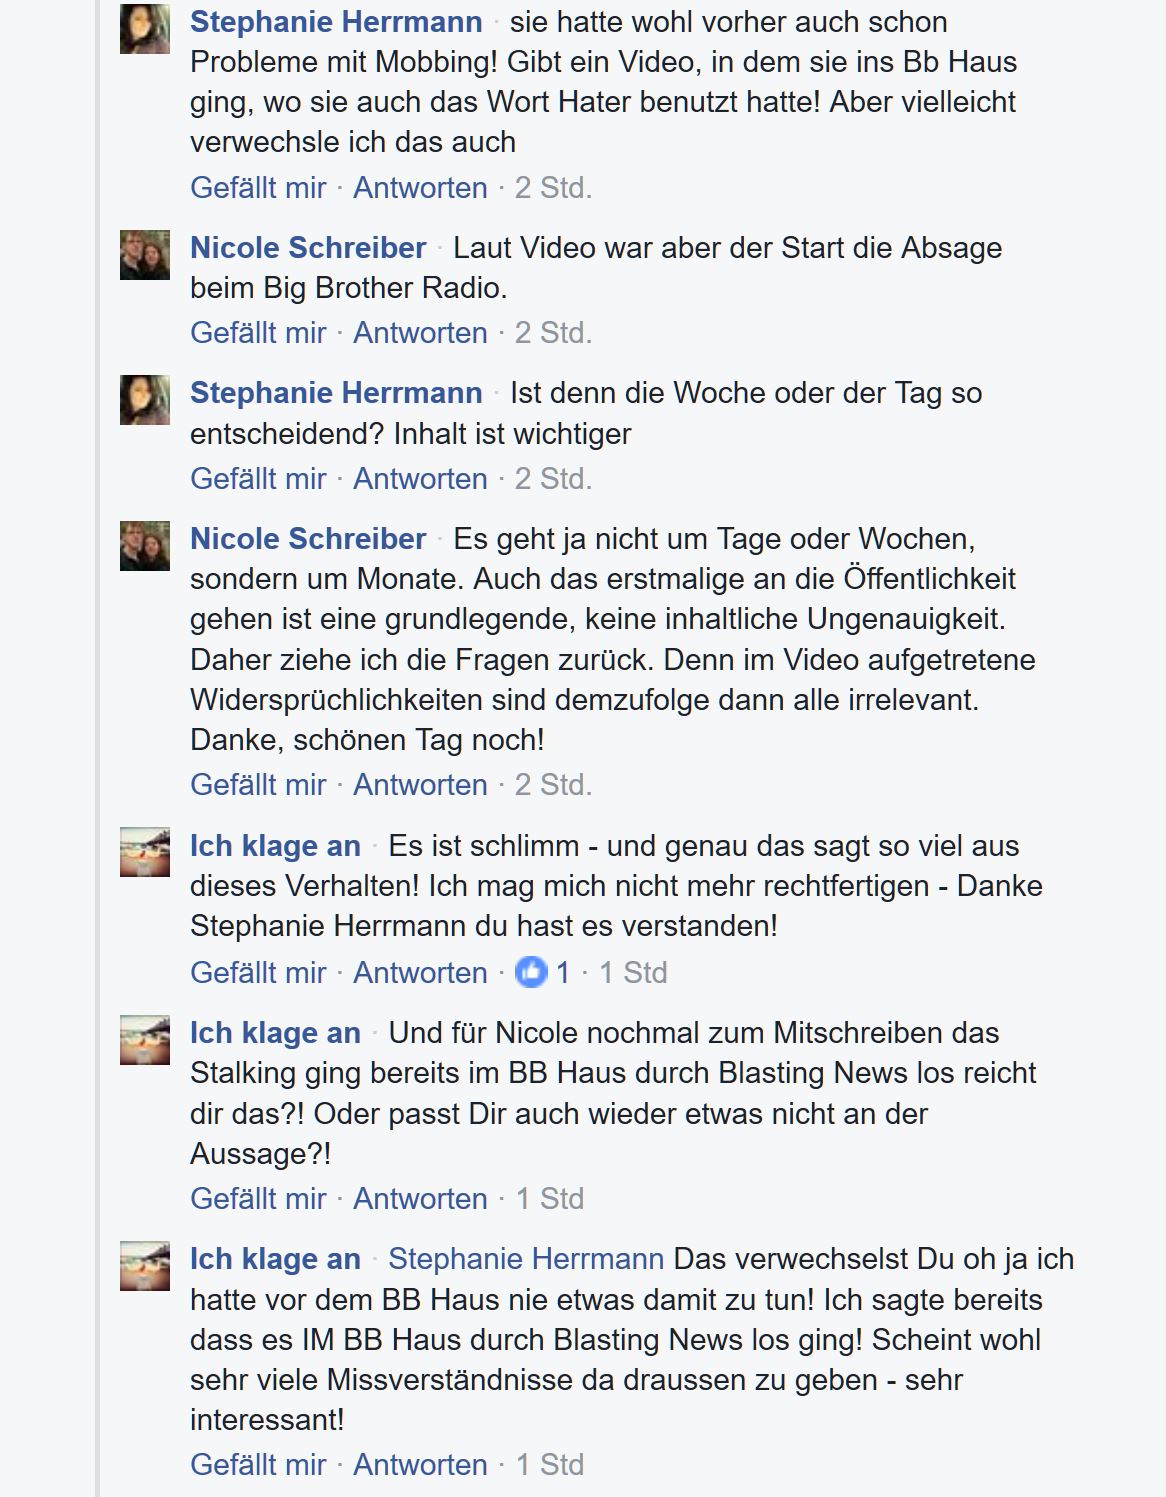 BiBi Bianca Döhring klagt an - Teil 1 - Kommentare